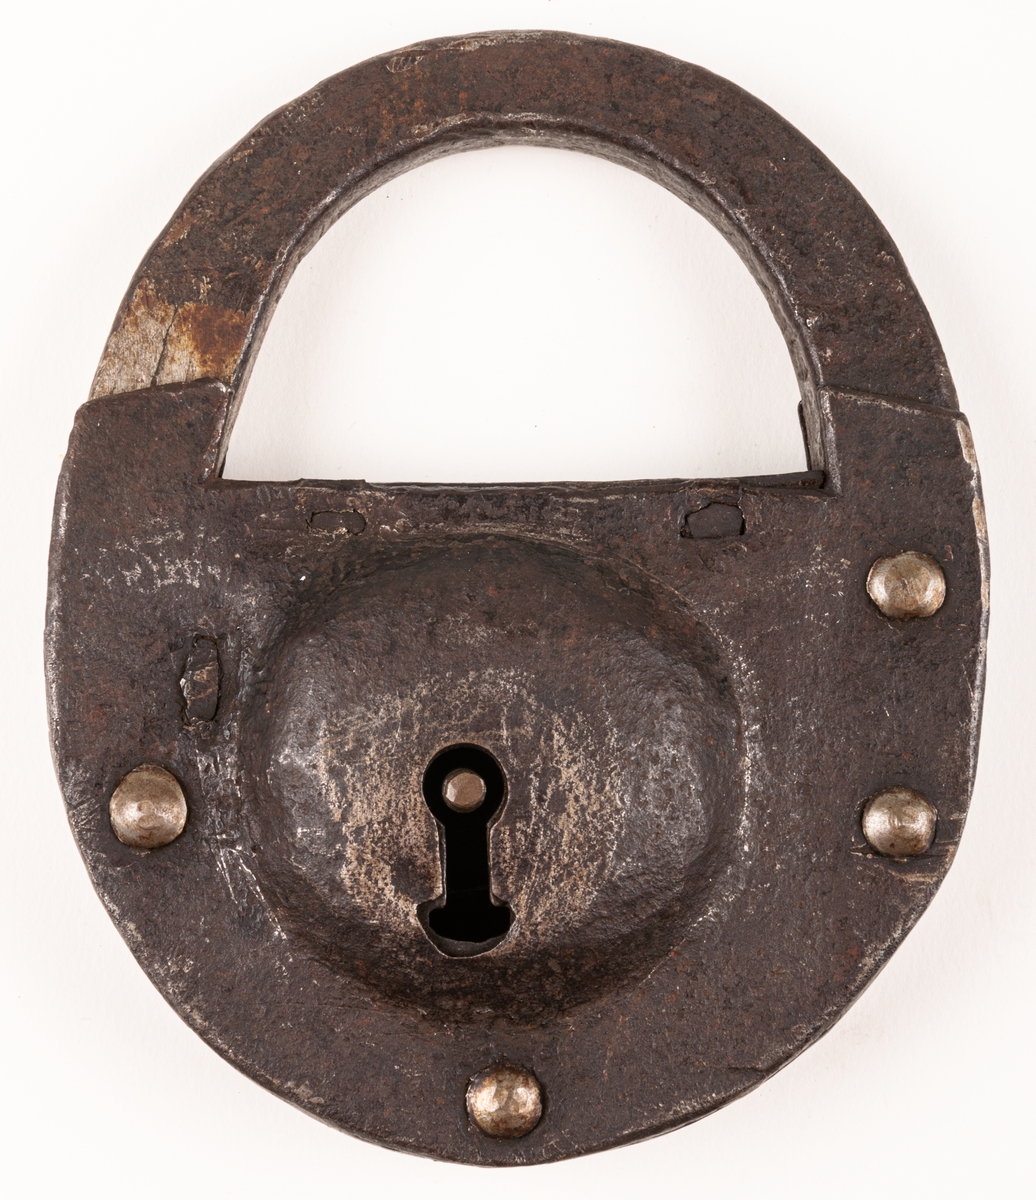 Hänglås, av järn, rundat. Med nyckel. Från brännvinskällare vid Strömsbro kronobränneri. Källarens portar märkta 1734.